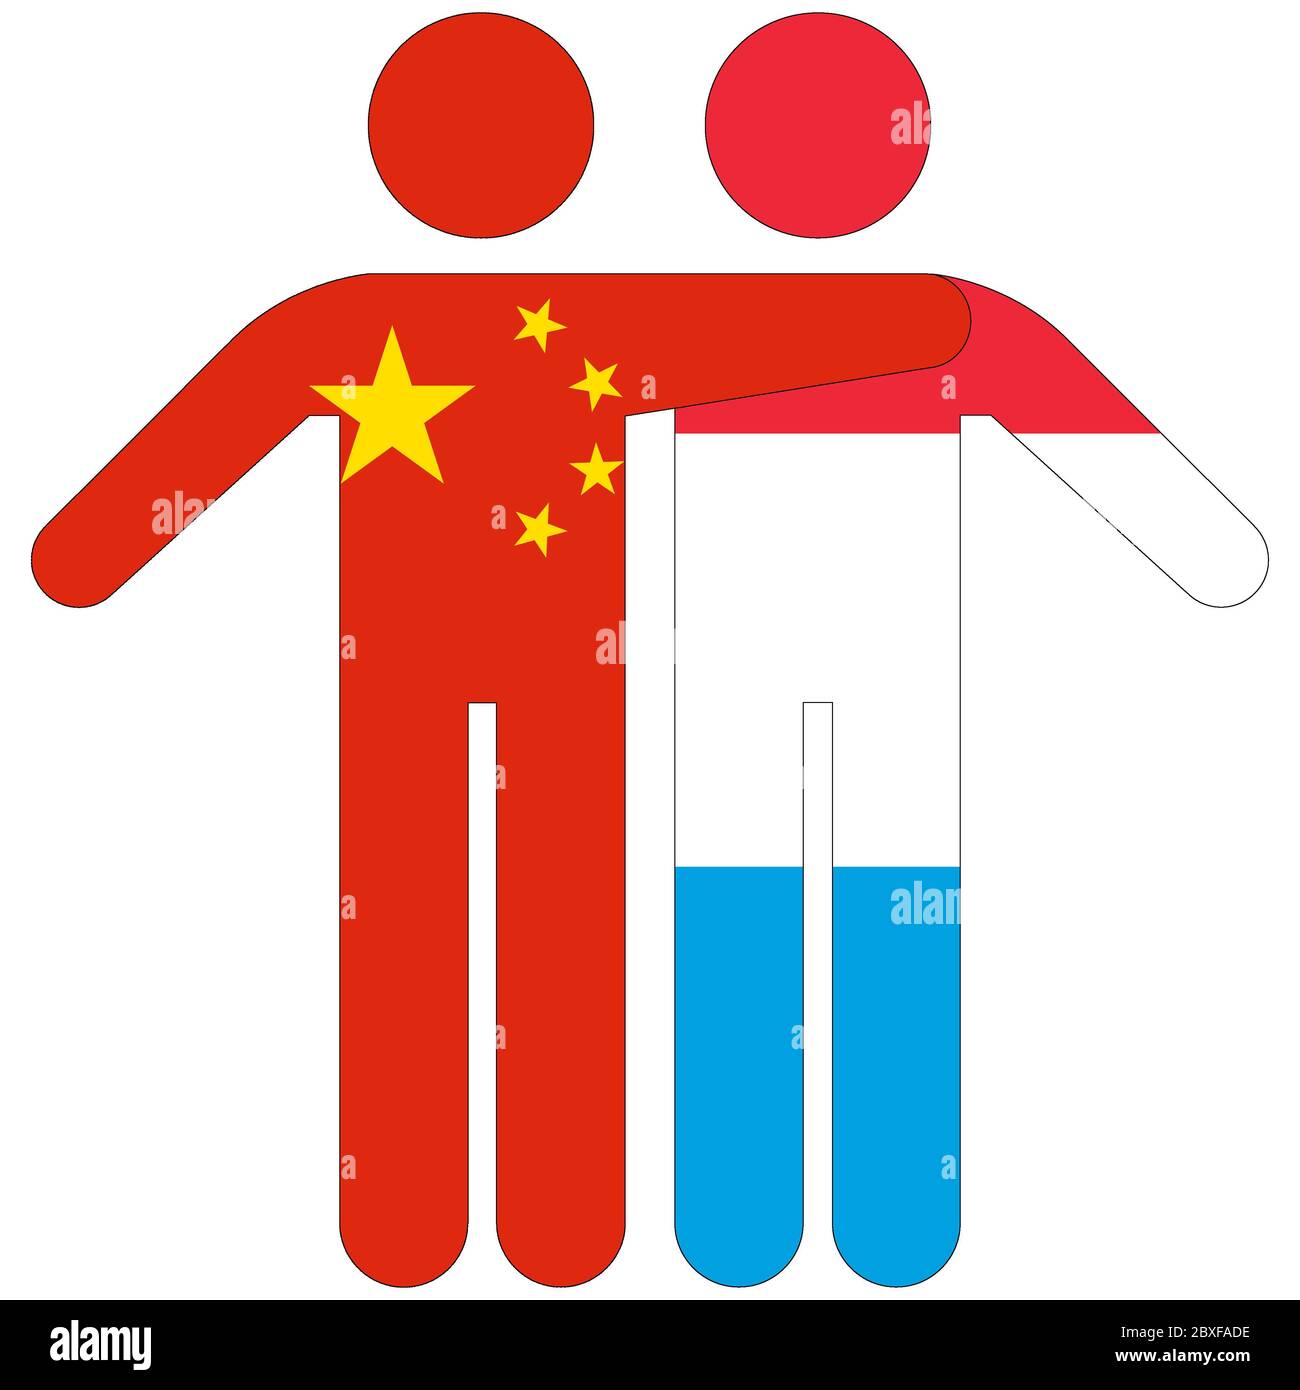 Chine - Luxembourg / concept d'amitié sur fond blanc Banque D'Images